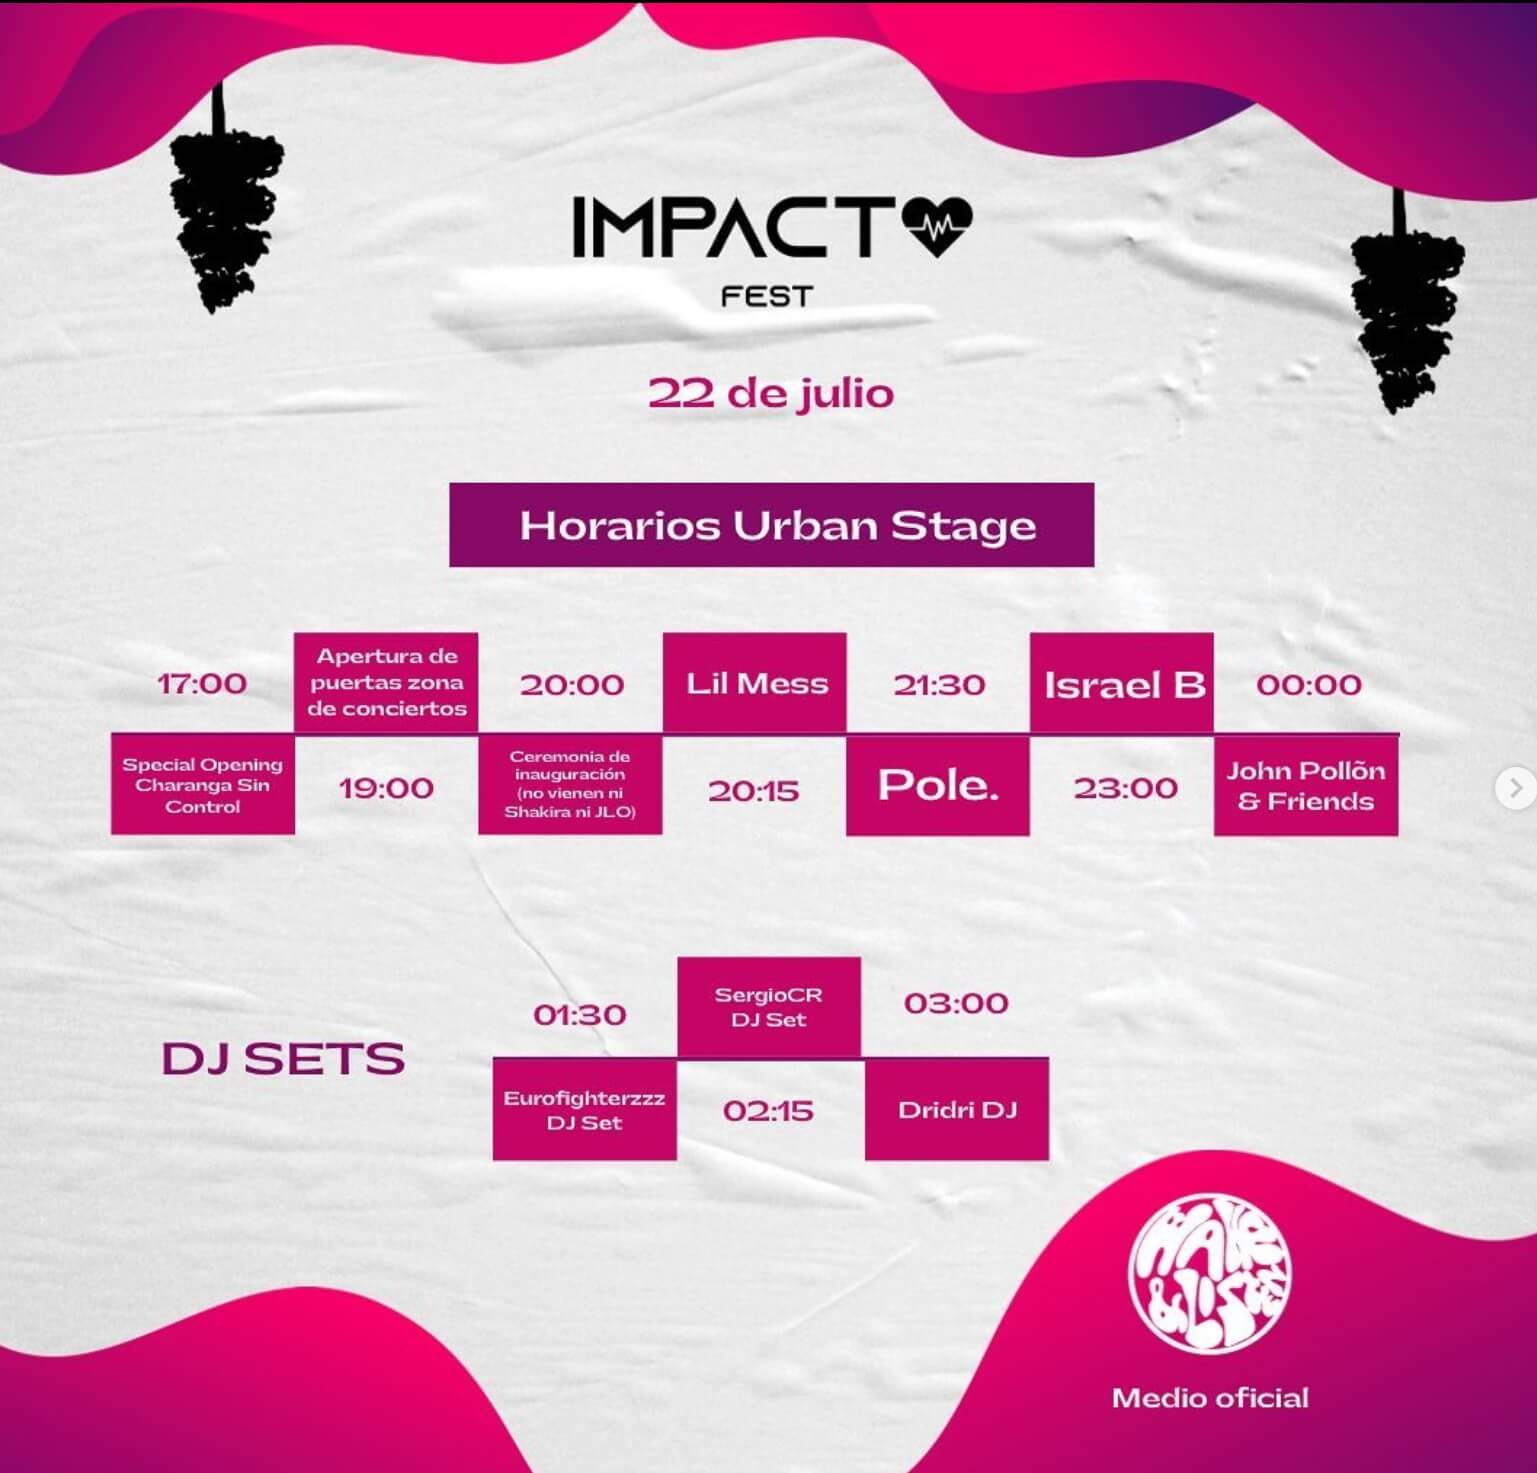 Horarios Urban Stage Impacto Fest